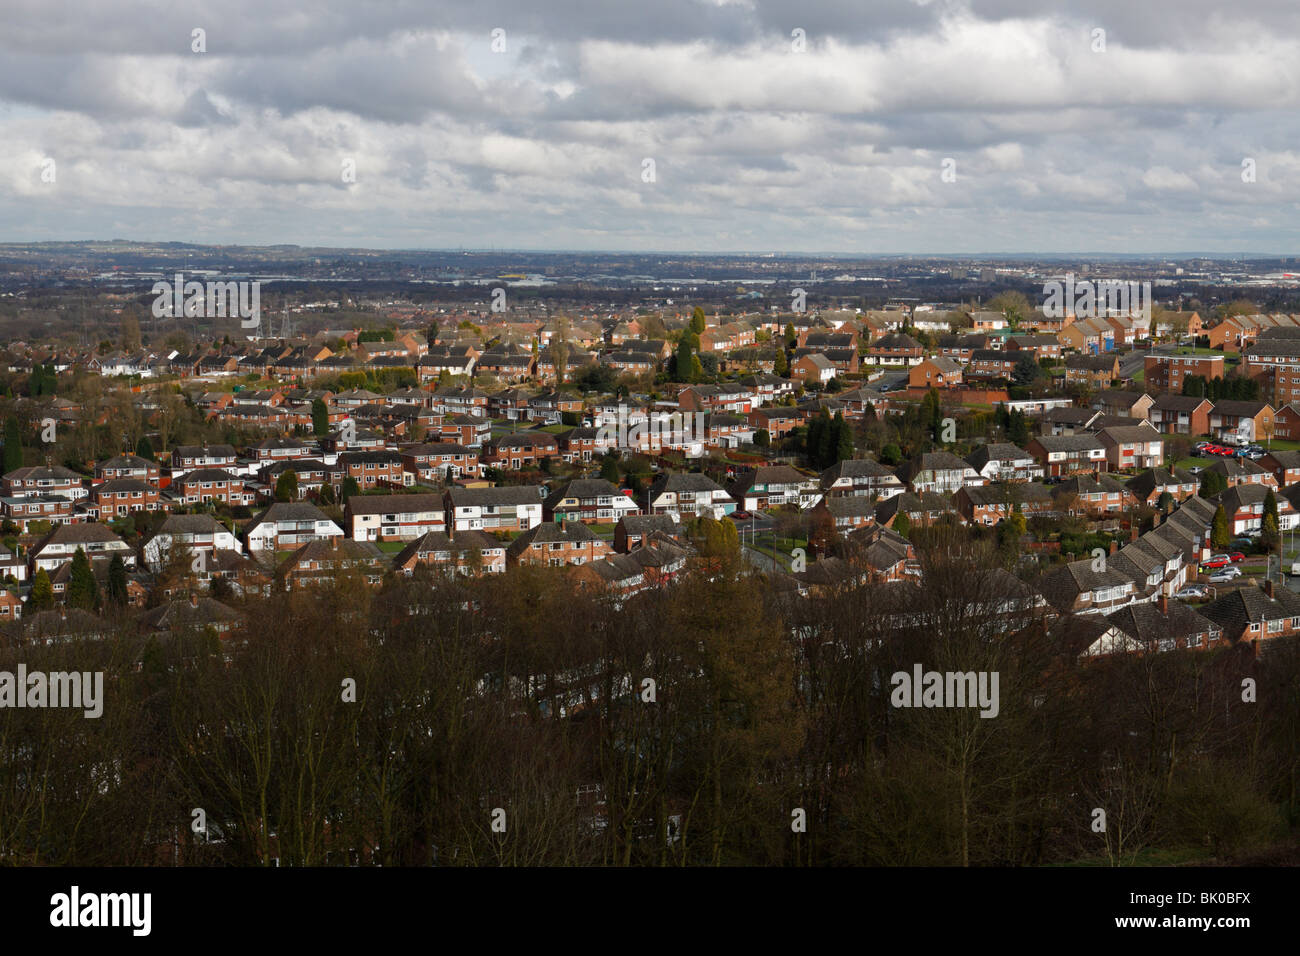 Une vue sur les villes environnantes et Pierre Tournier dans le Black Country (en anglais West Midlands) montrant de vastes lotissements Banque D'Images